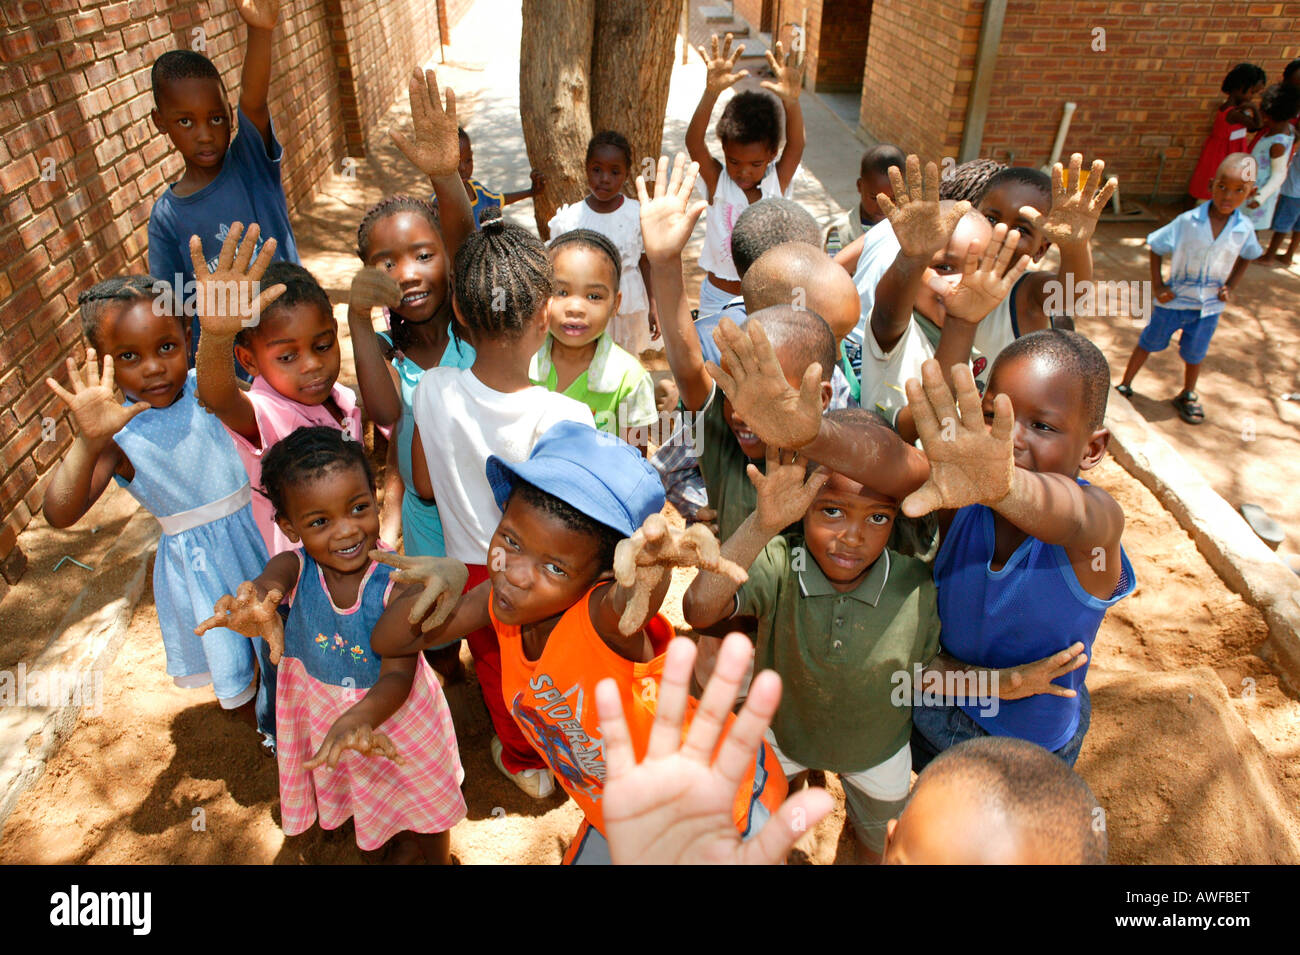 Children showing their sandy hands at a kindergarten, Gaborone, Botswana, Africa Stock Photo